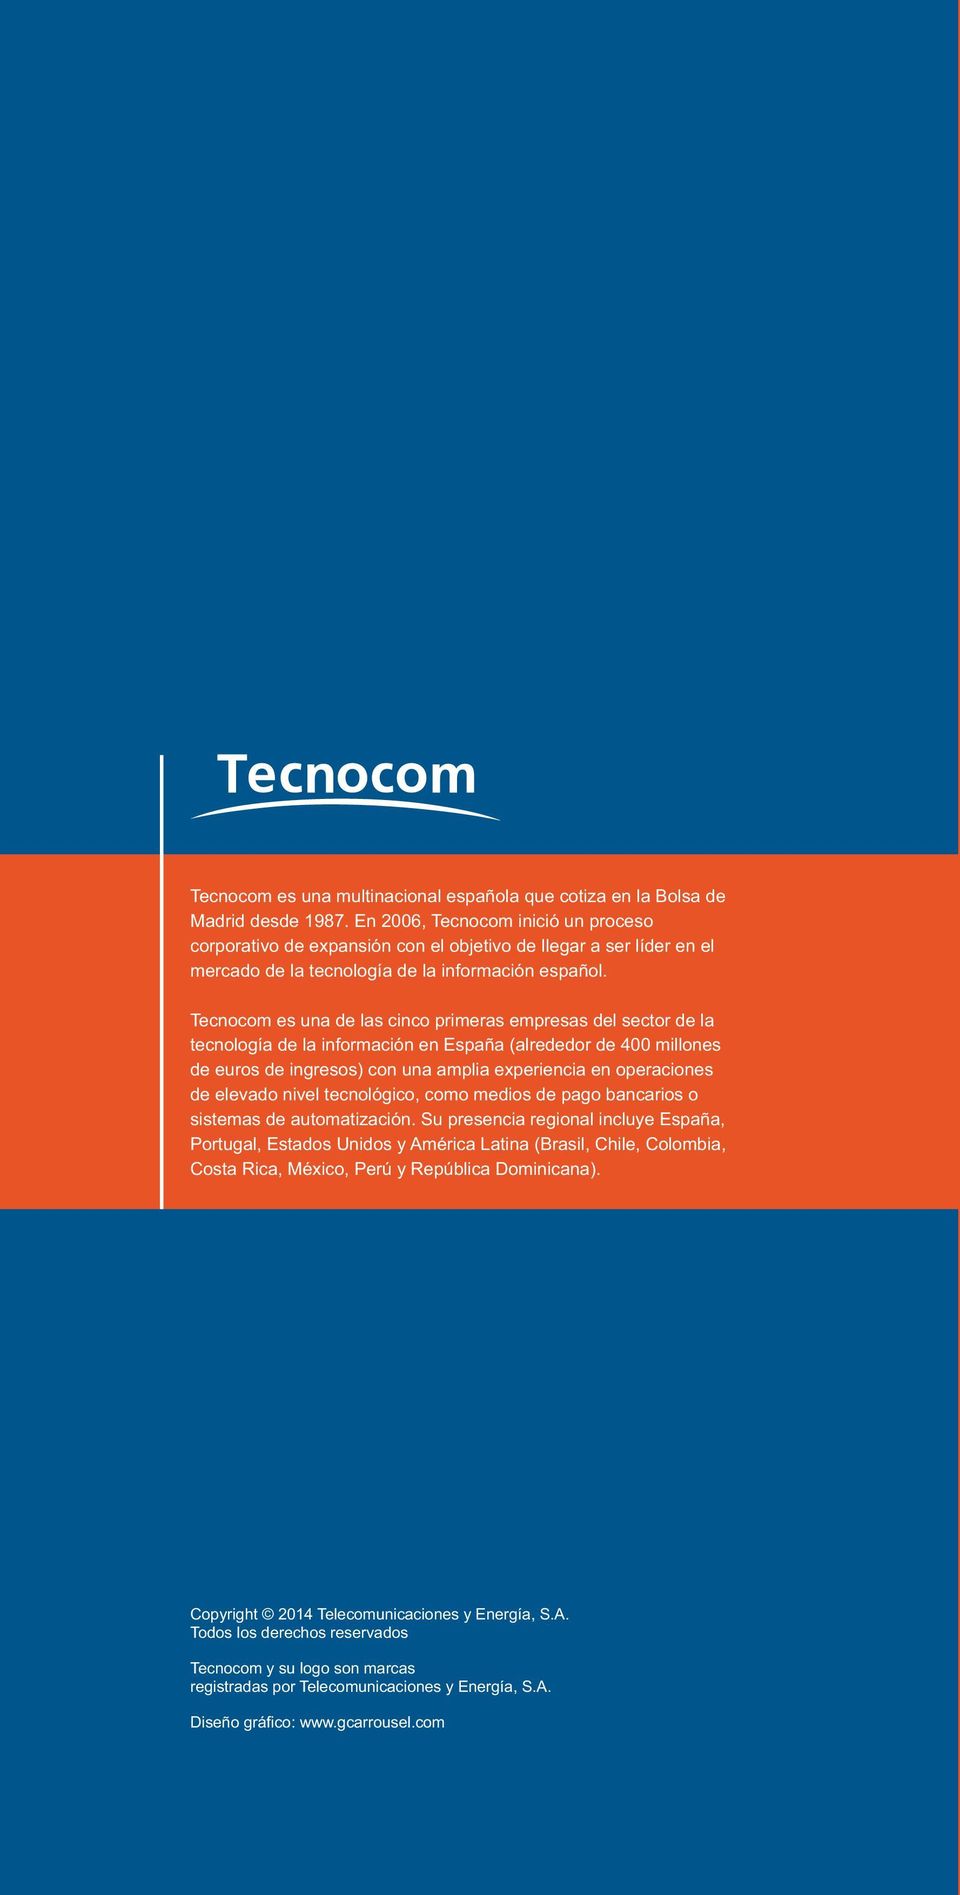 Tecnocom es una de las cinco primeras empresas del sector de la tecnología de la información en España (alrededor de 400 millones de euros de ingresos) con una amplia experiencia en operaciones de